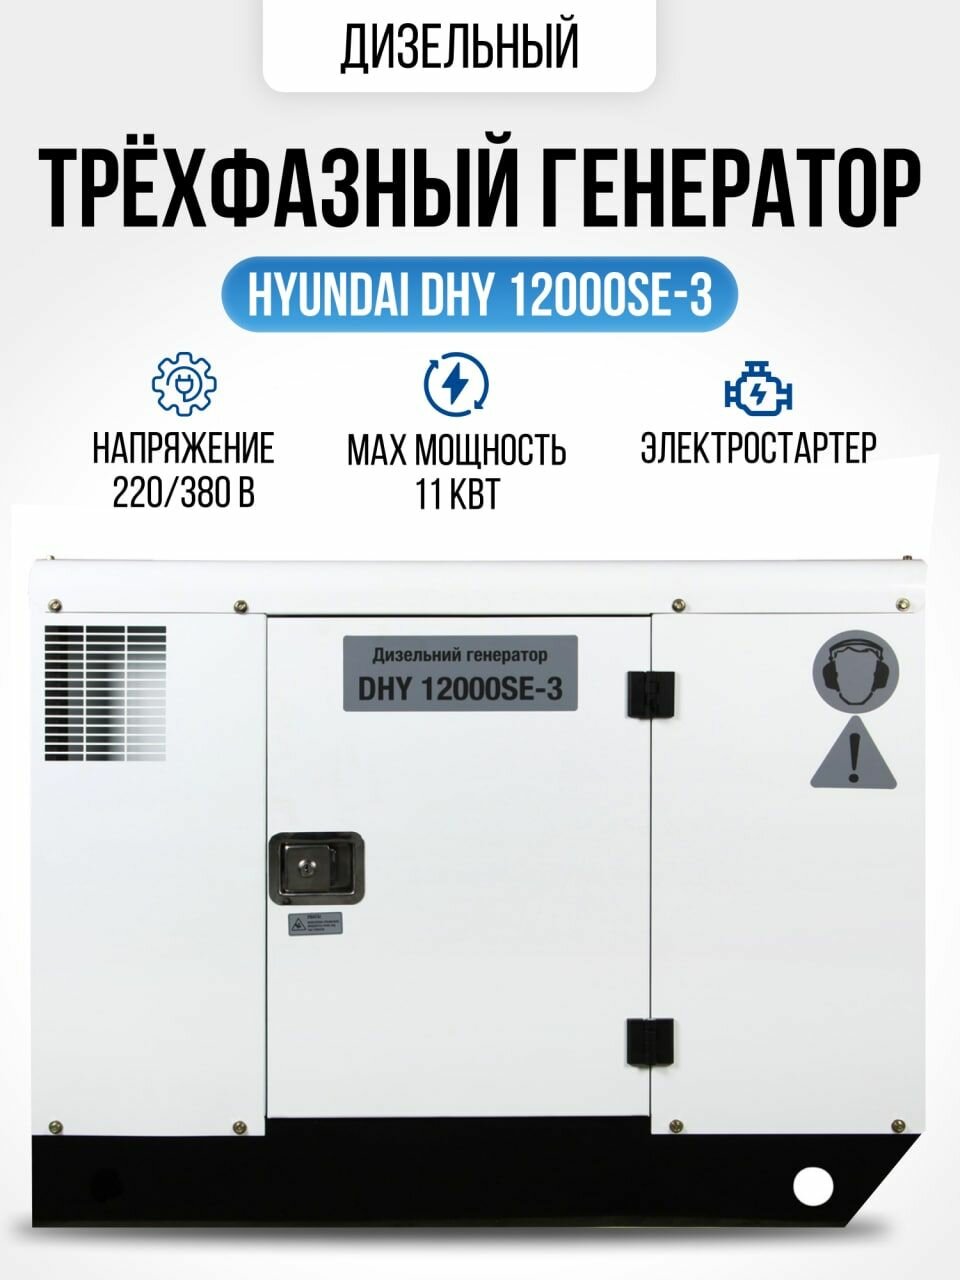 Дизельный генератор HYUNDAI DHY 12000SE-3 11 кВт /электрогенератор с электрическим запуском и автоматическим регулятором напряжения / электростанция